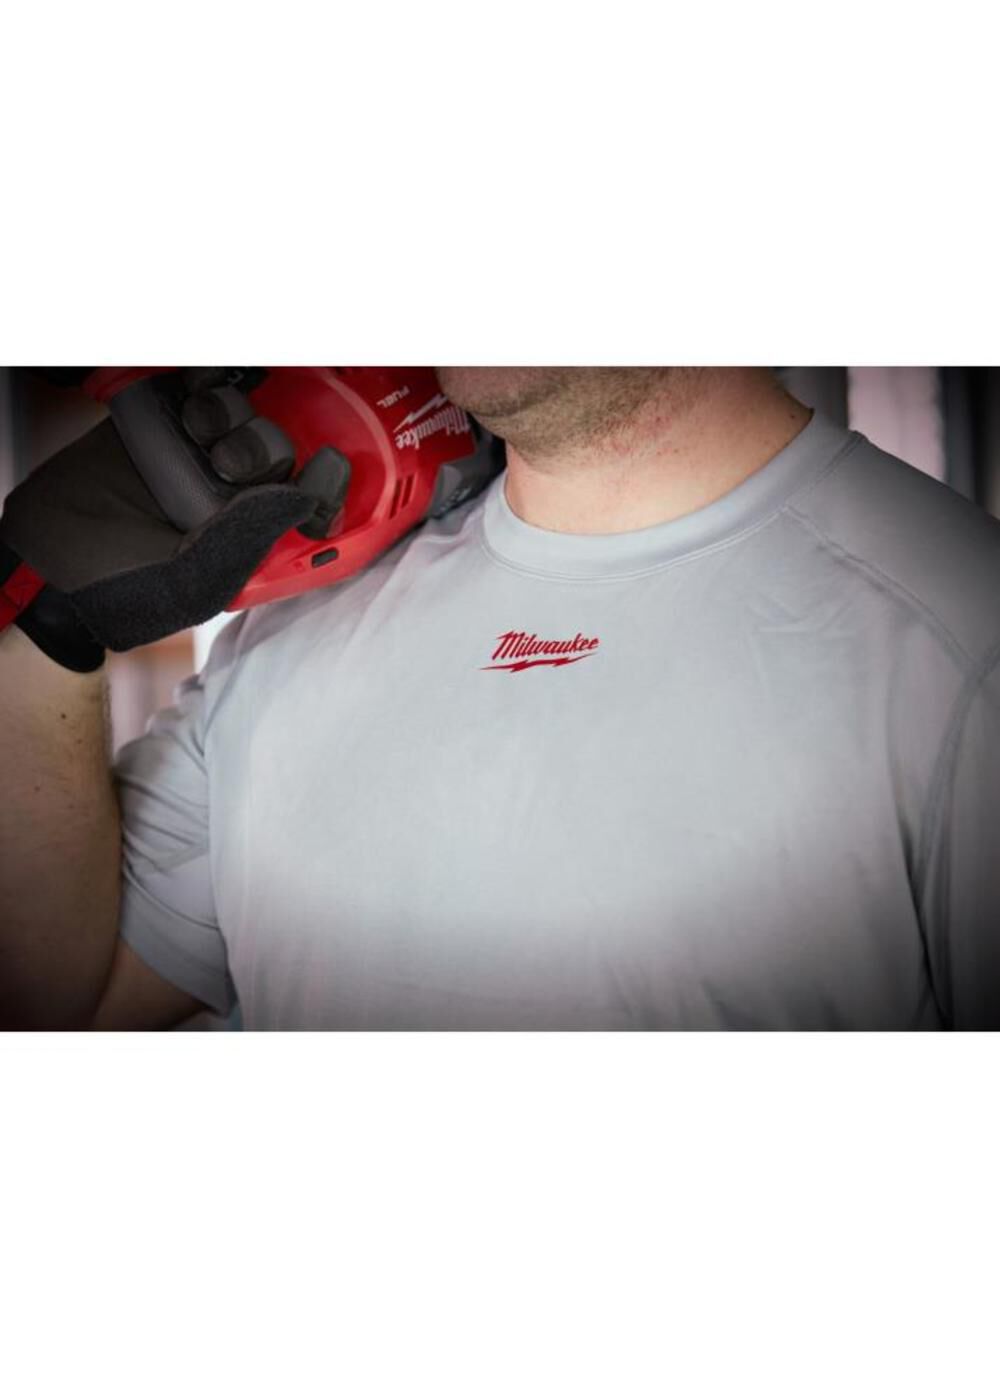 WorkSkin Light Weight Performance Shirt - Gray 410G-M